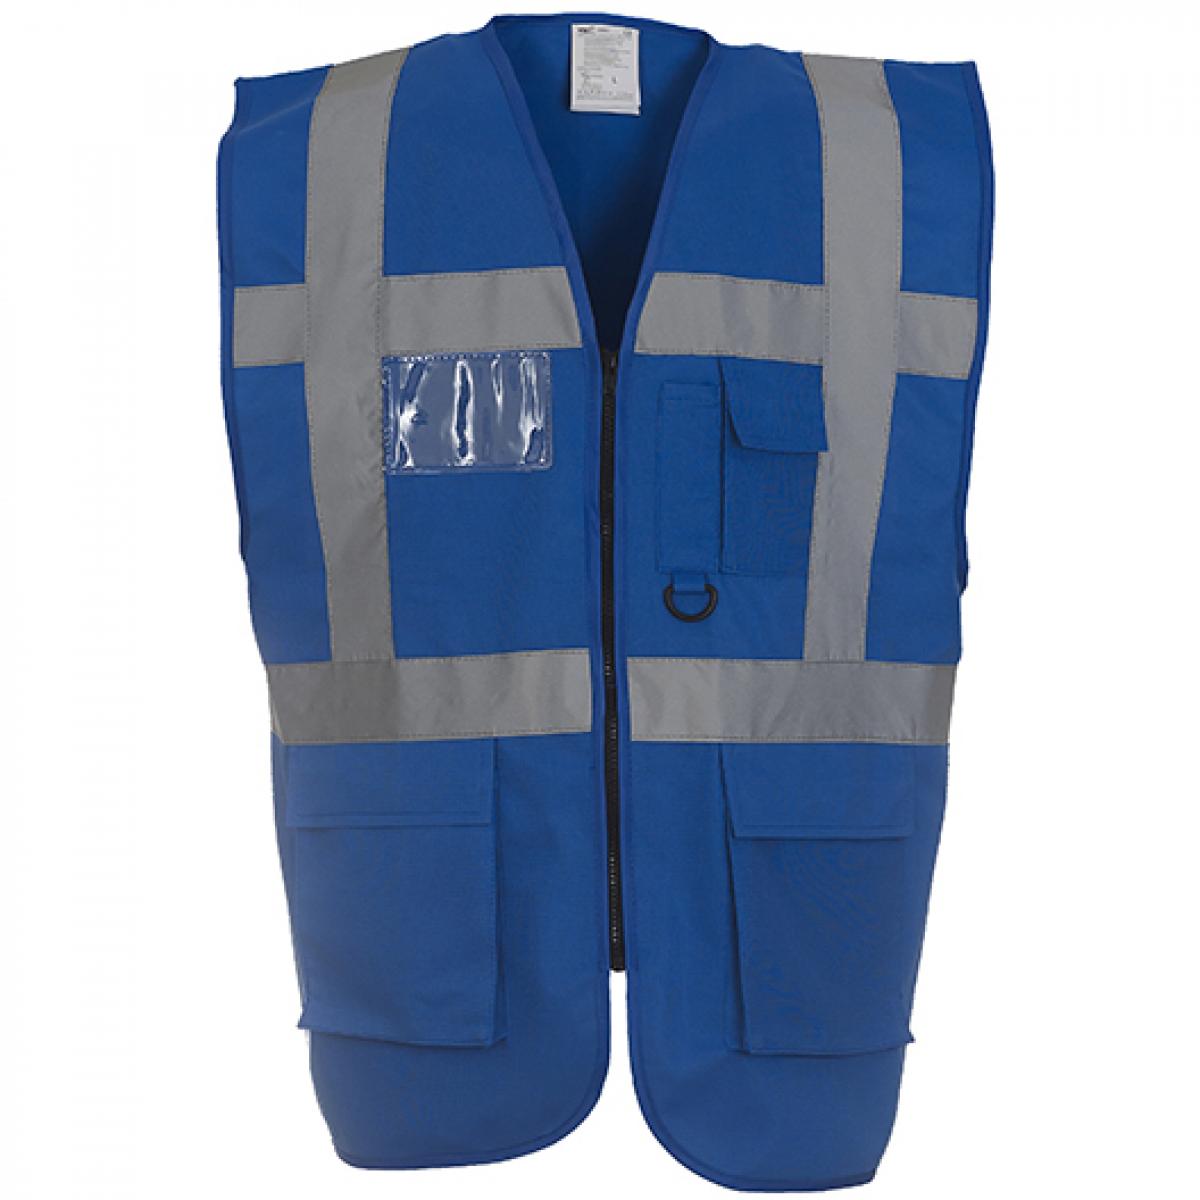 Hersteller: YOKO Herstellernummer: HVW801 Artikelbezeichnung: Herren Multi-Functional Executive Waistcoat Farbe: Royal Blue